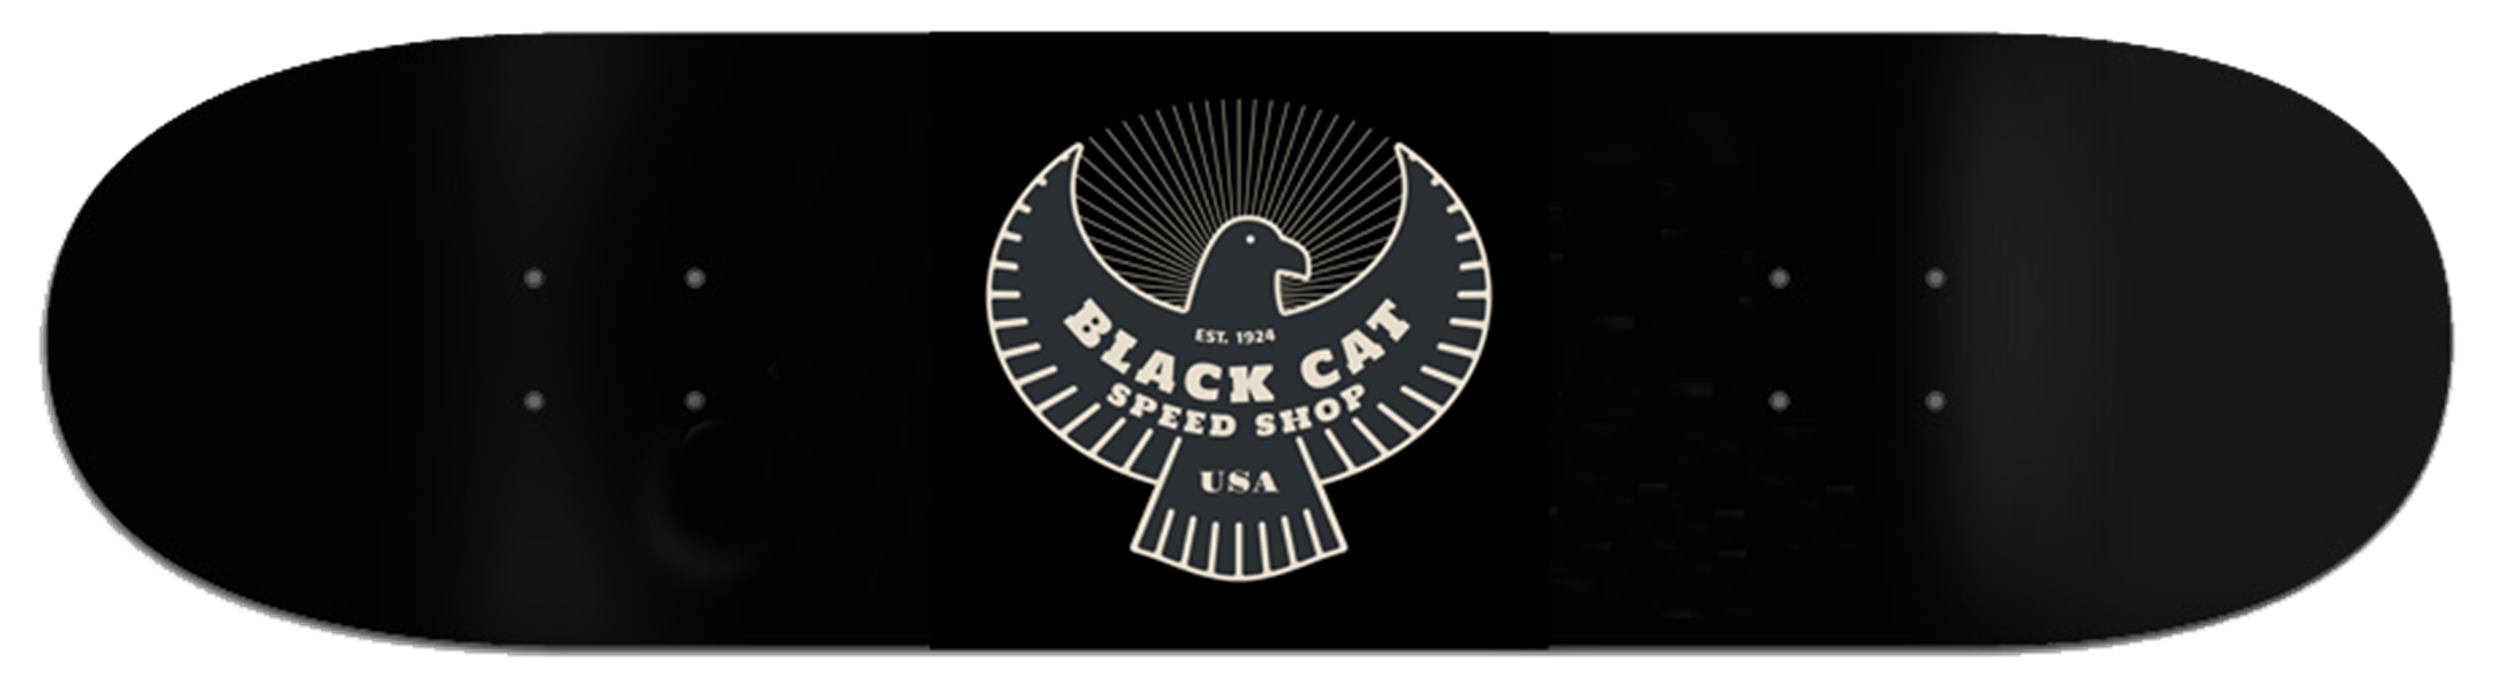 Black Cat Speed Shop Boards